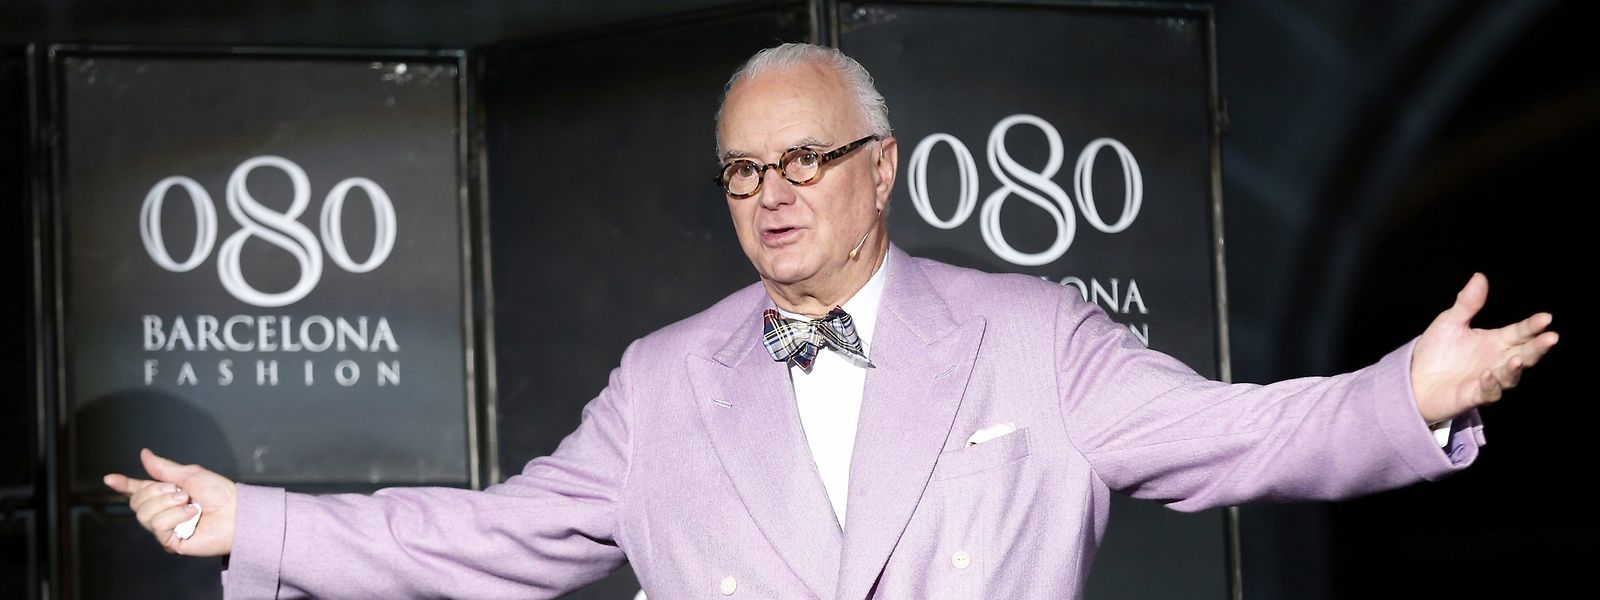 Der spanische Modedesigner Manolo Blahnik, Gründer der gleichnamigen Schuhmarke, feiert am Sonntag seinen 80. Geburtstag. 